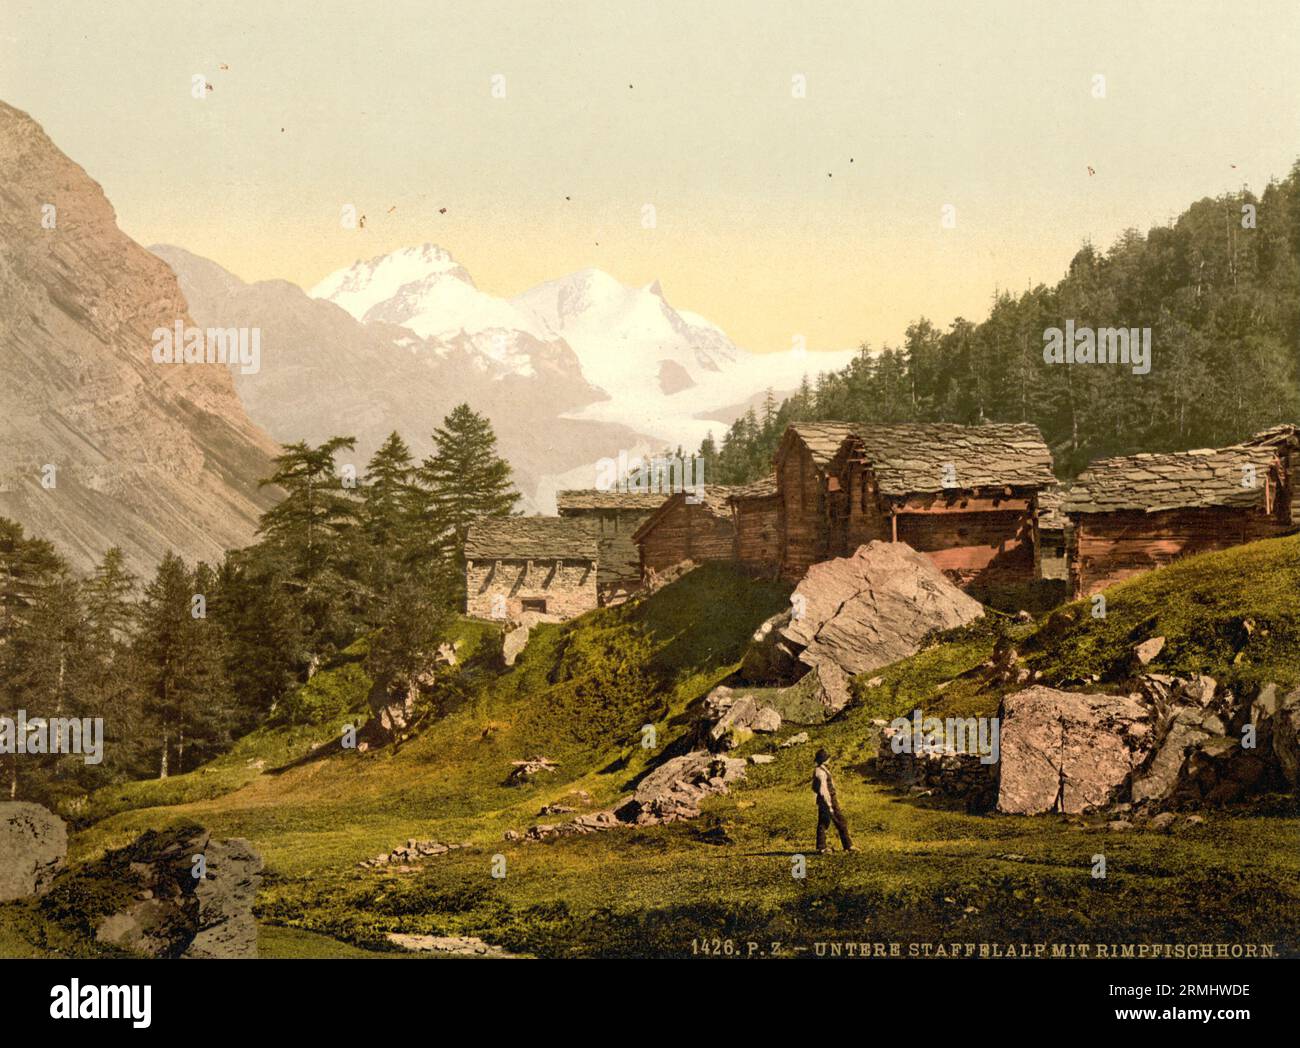 Meide Mittlere Staffel and Rimpfischhorn, with chalets, Valais, Switzerland 1890. Stock Photo